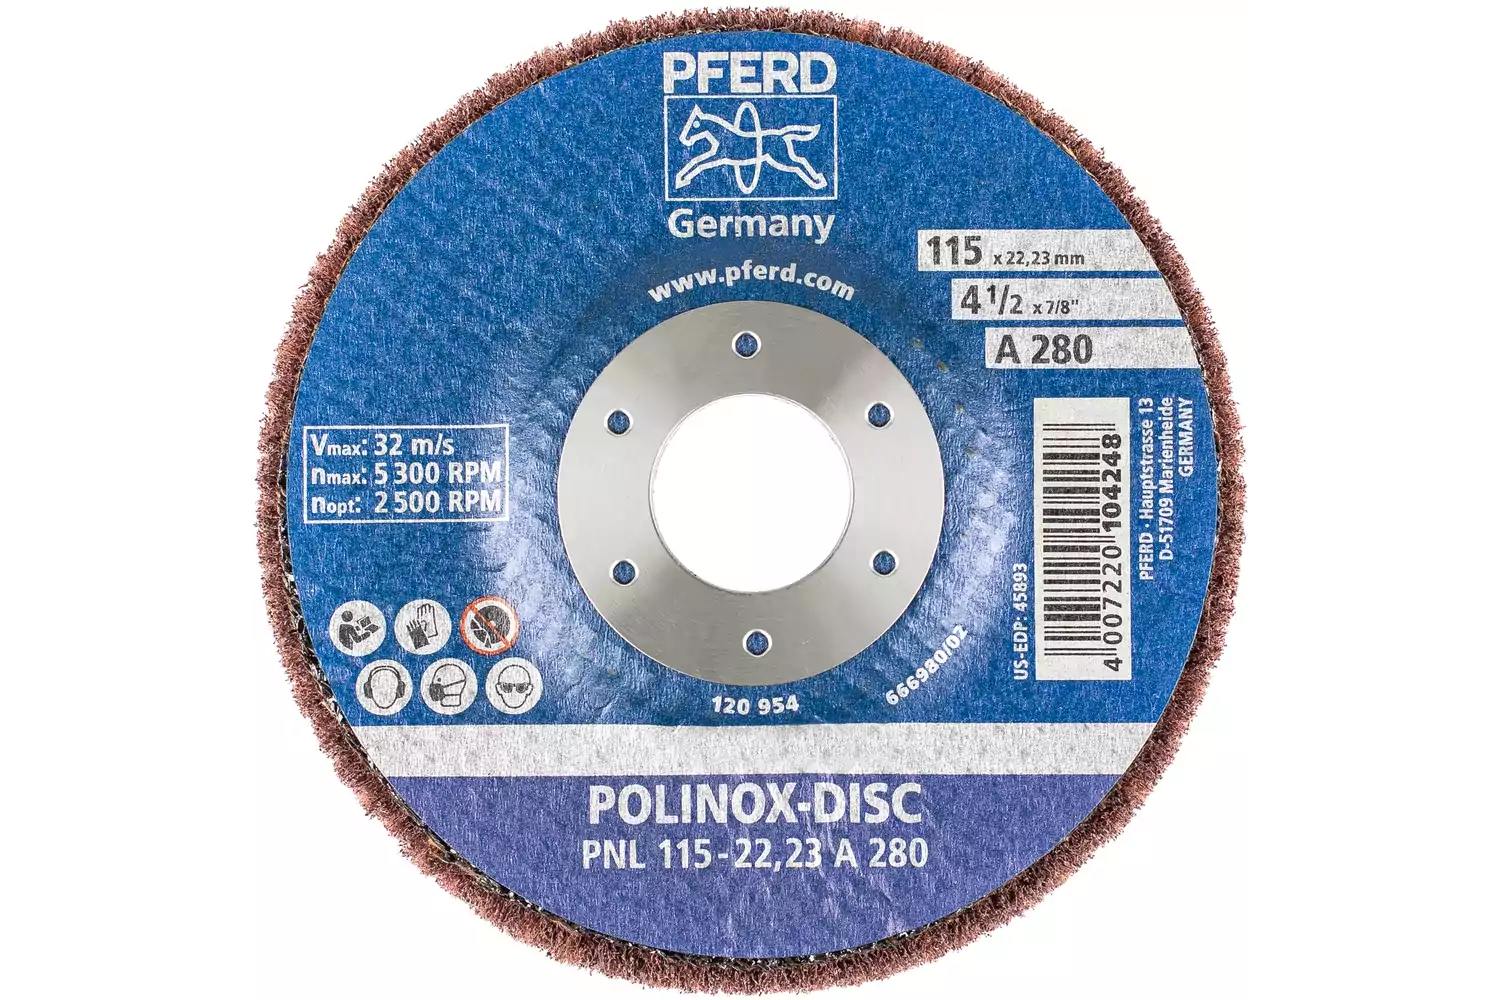 POLINOX Vlies-Schleifdisc PNL Ø 115 mm Bohrung-Ø 22,23 mm A280 für Feinschliff und Finish 3